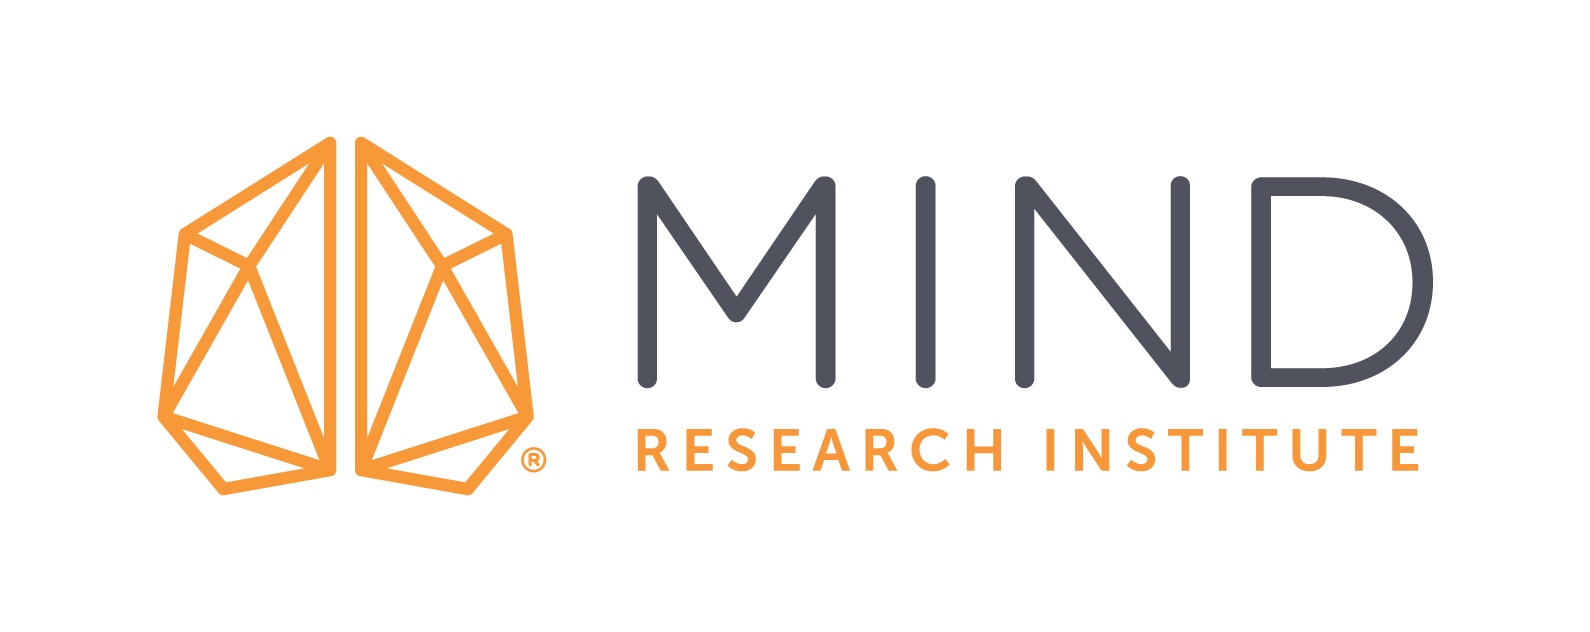 Mind Research Institute